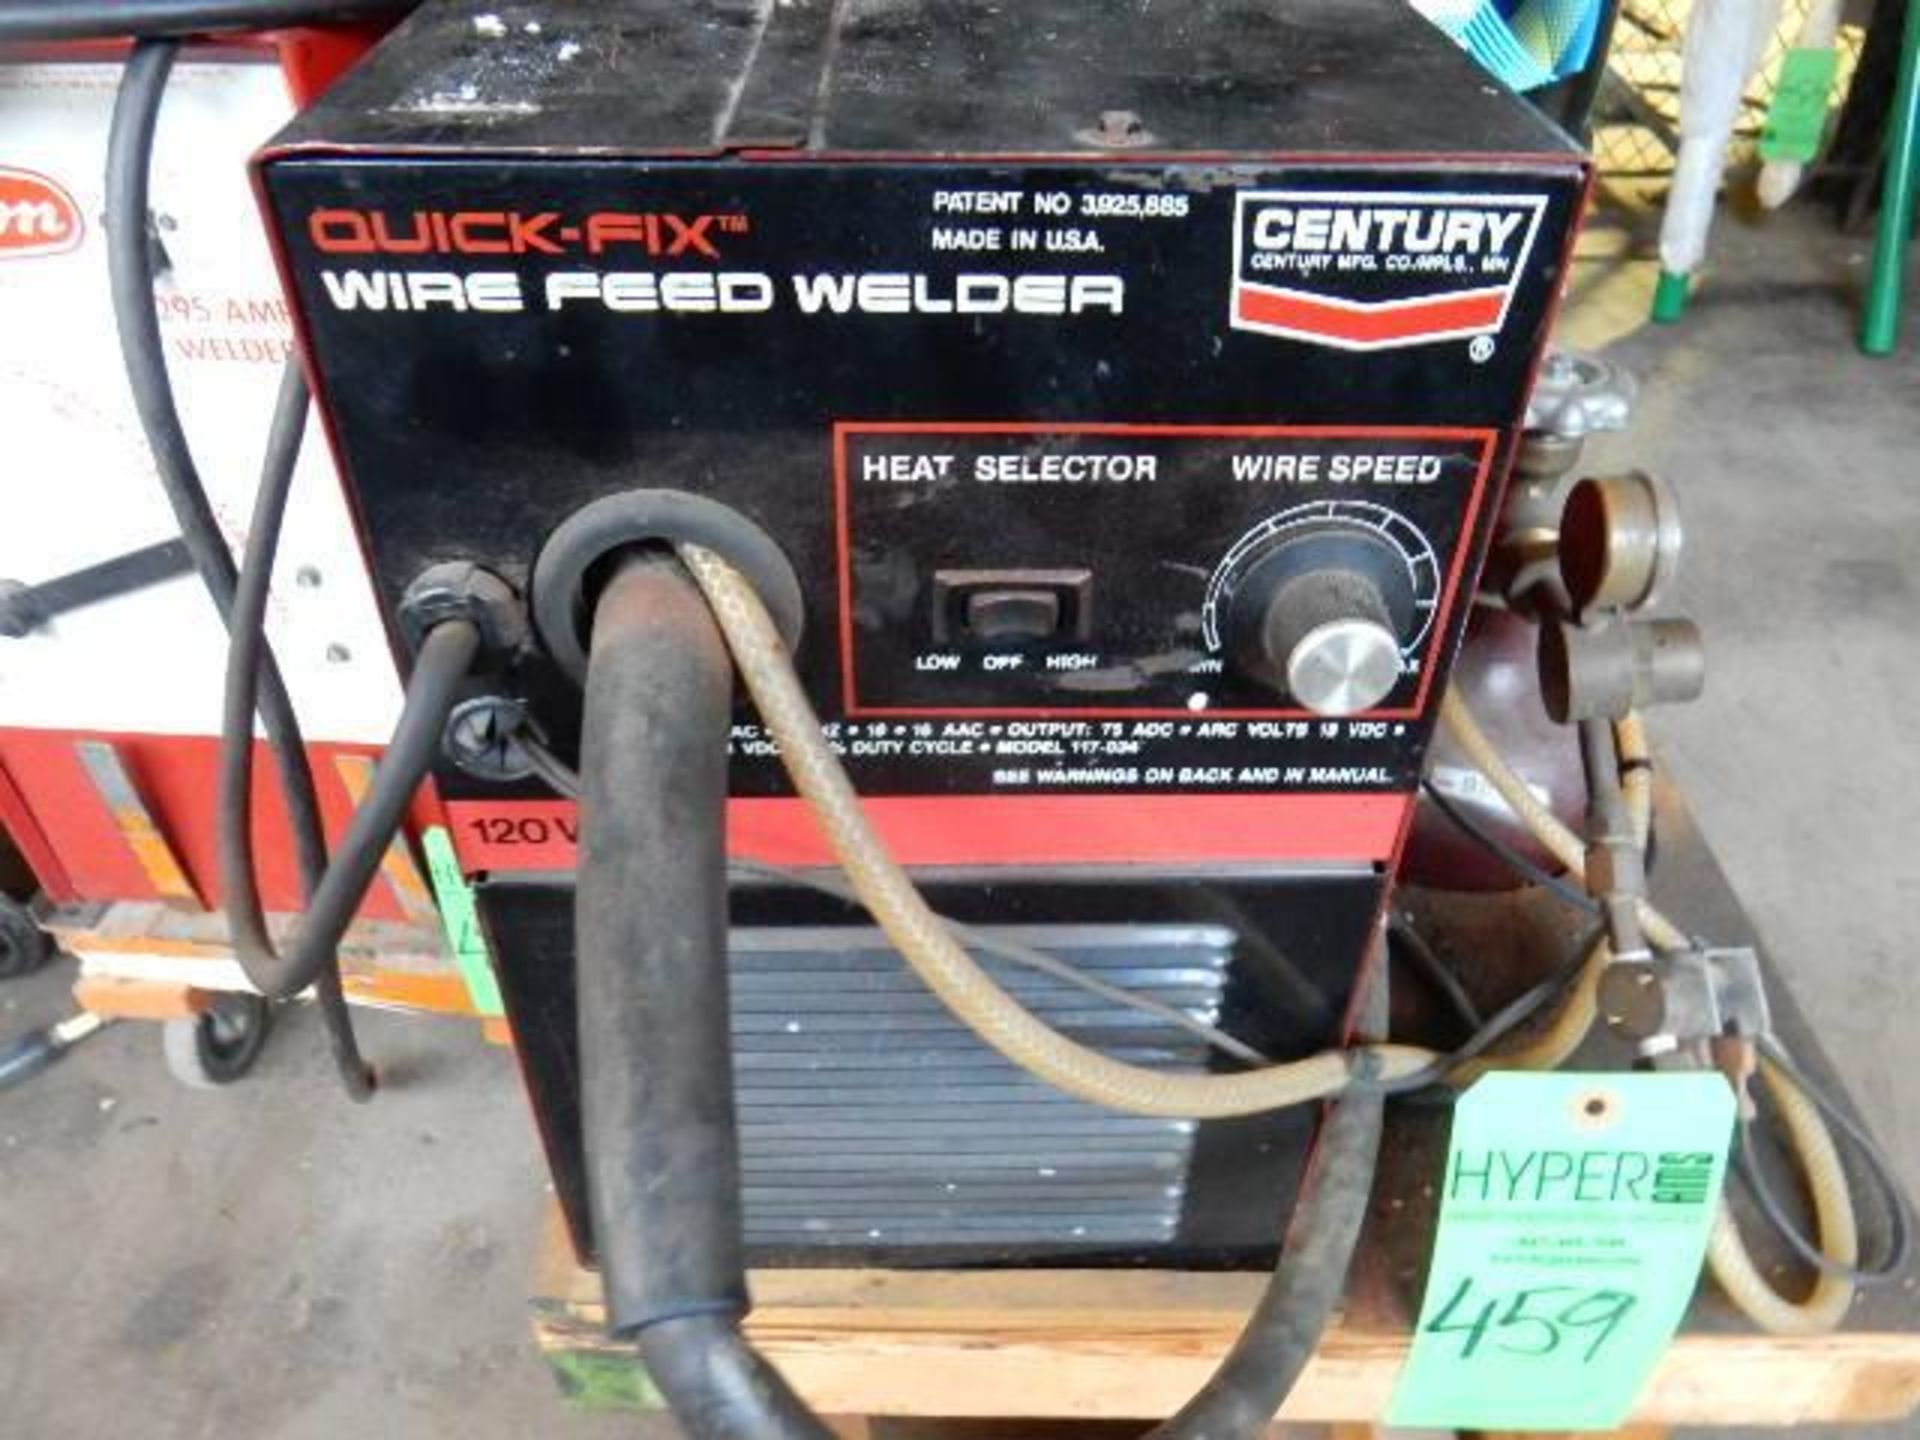 Century Wire Feed Welder , Model 117- 034, 120 Volt, 60 HZ, - Image 3 of 3